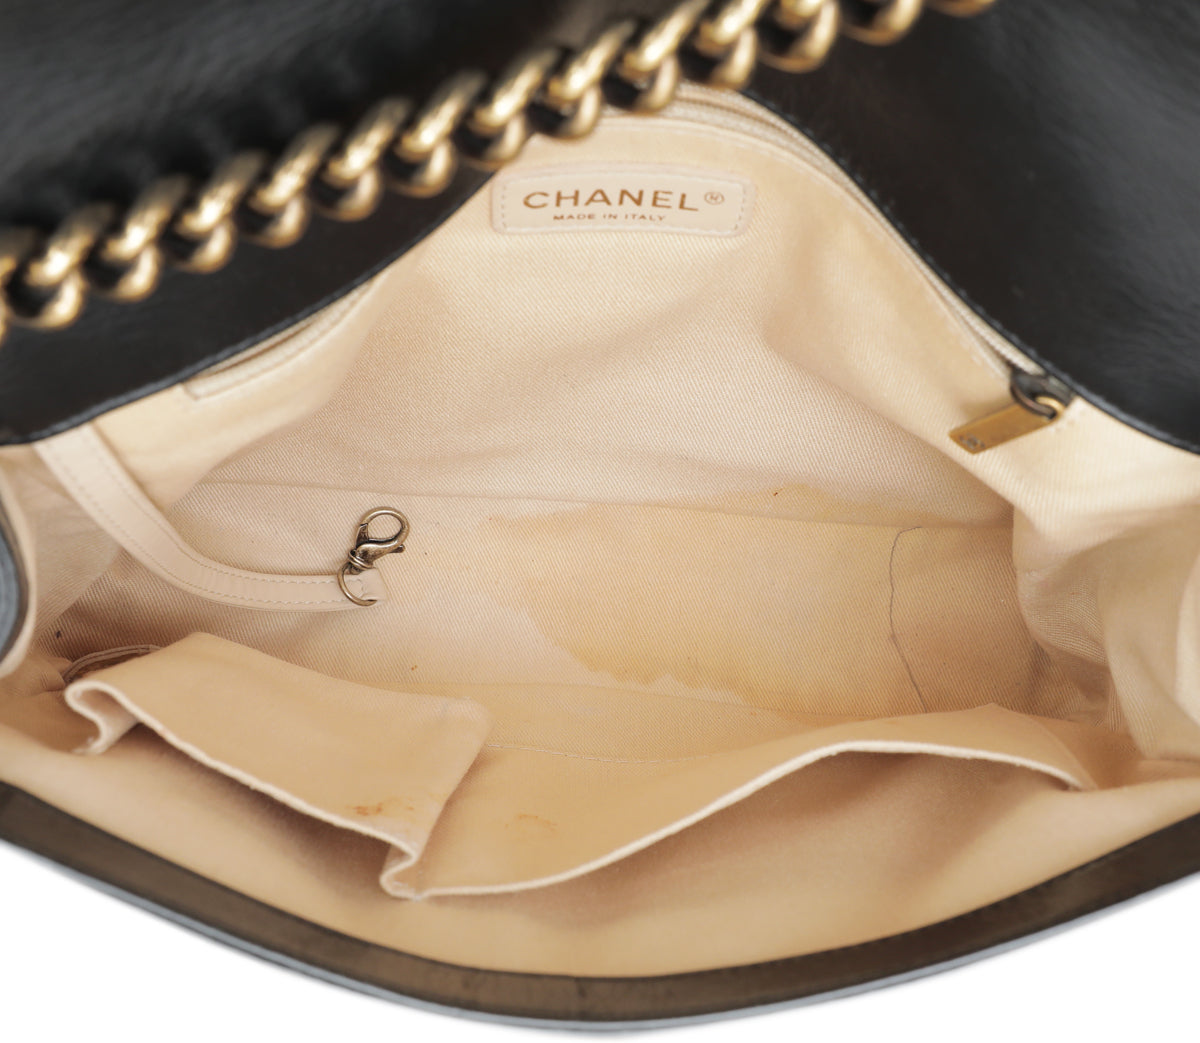 Chanel Black Le Boy Large Flap Bag